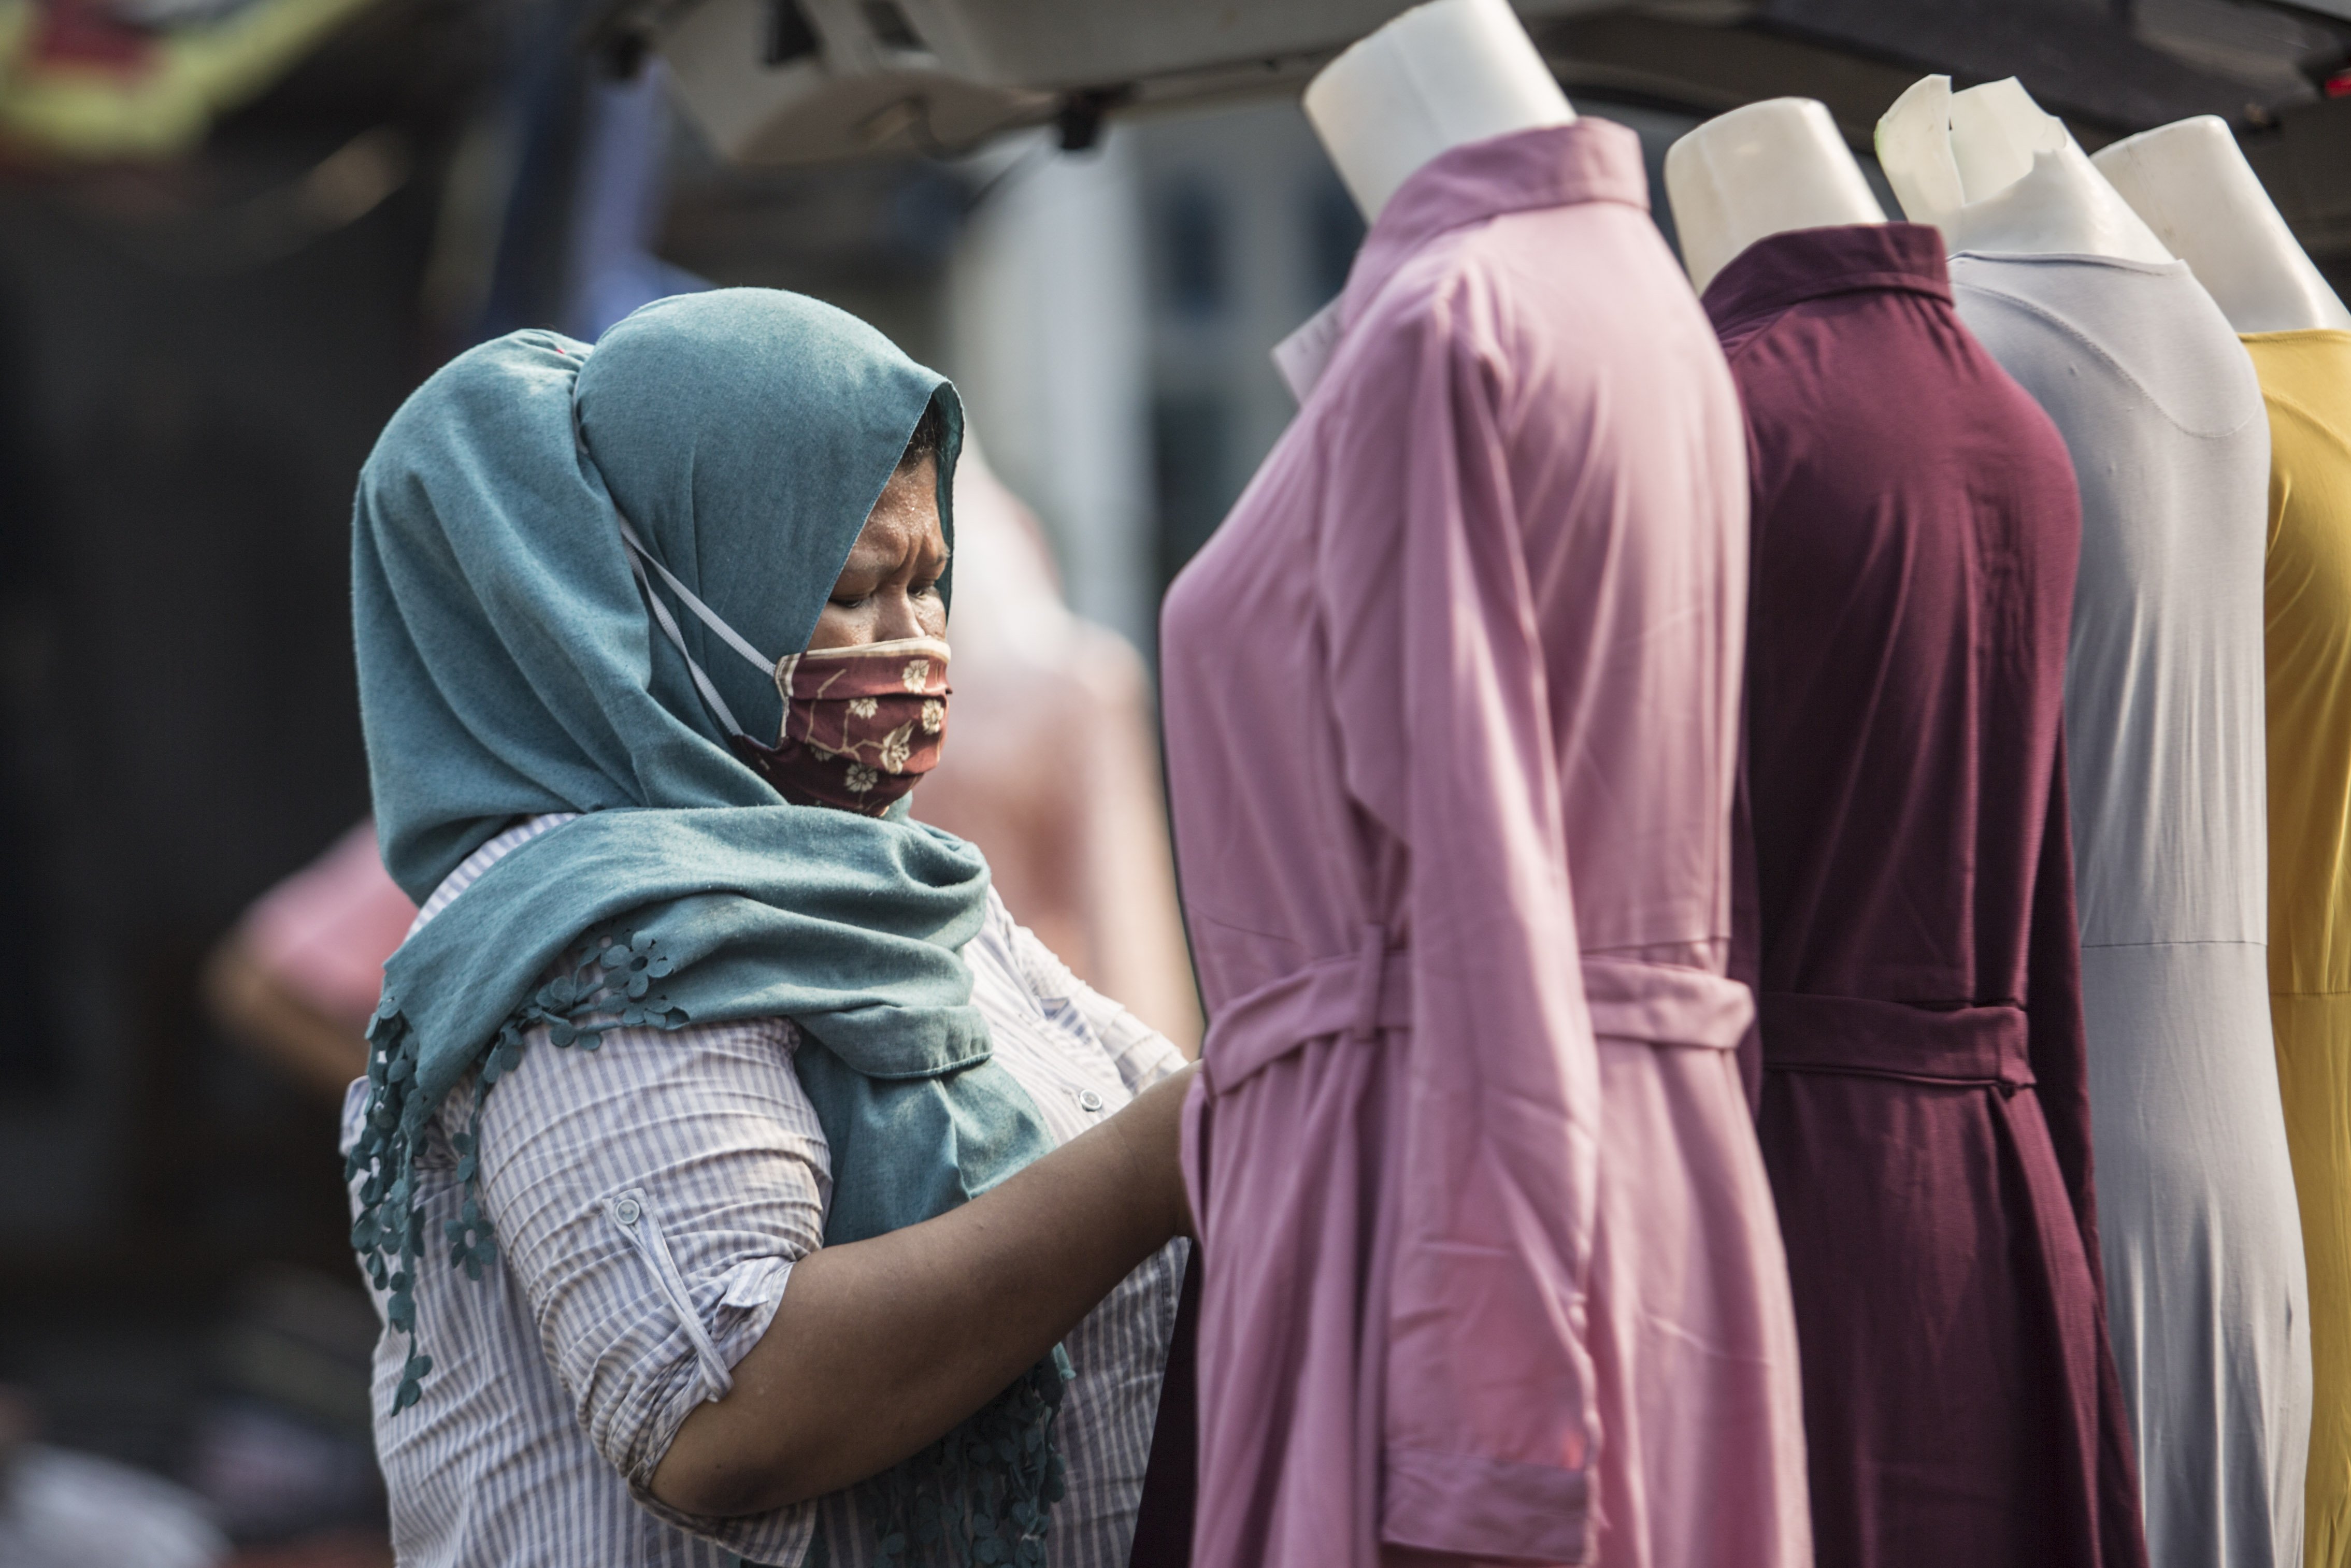 Pedagang pakaian membereskan dagangannya di Pasar Tasik, Cideng, Jakarta, Kamis (11/6/2020). Sempat ditutup sejak April lalu, kini Pasar Tasik kembali buka pada masa transisi Pembasatan Sosial Bersekala Besar (PSBB) dengan menerapkan protokol kesehatan serta pembatasan jumlah pengunjung.